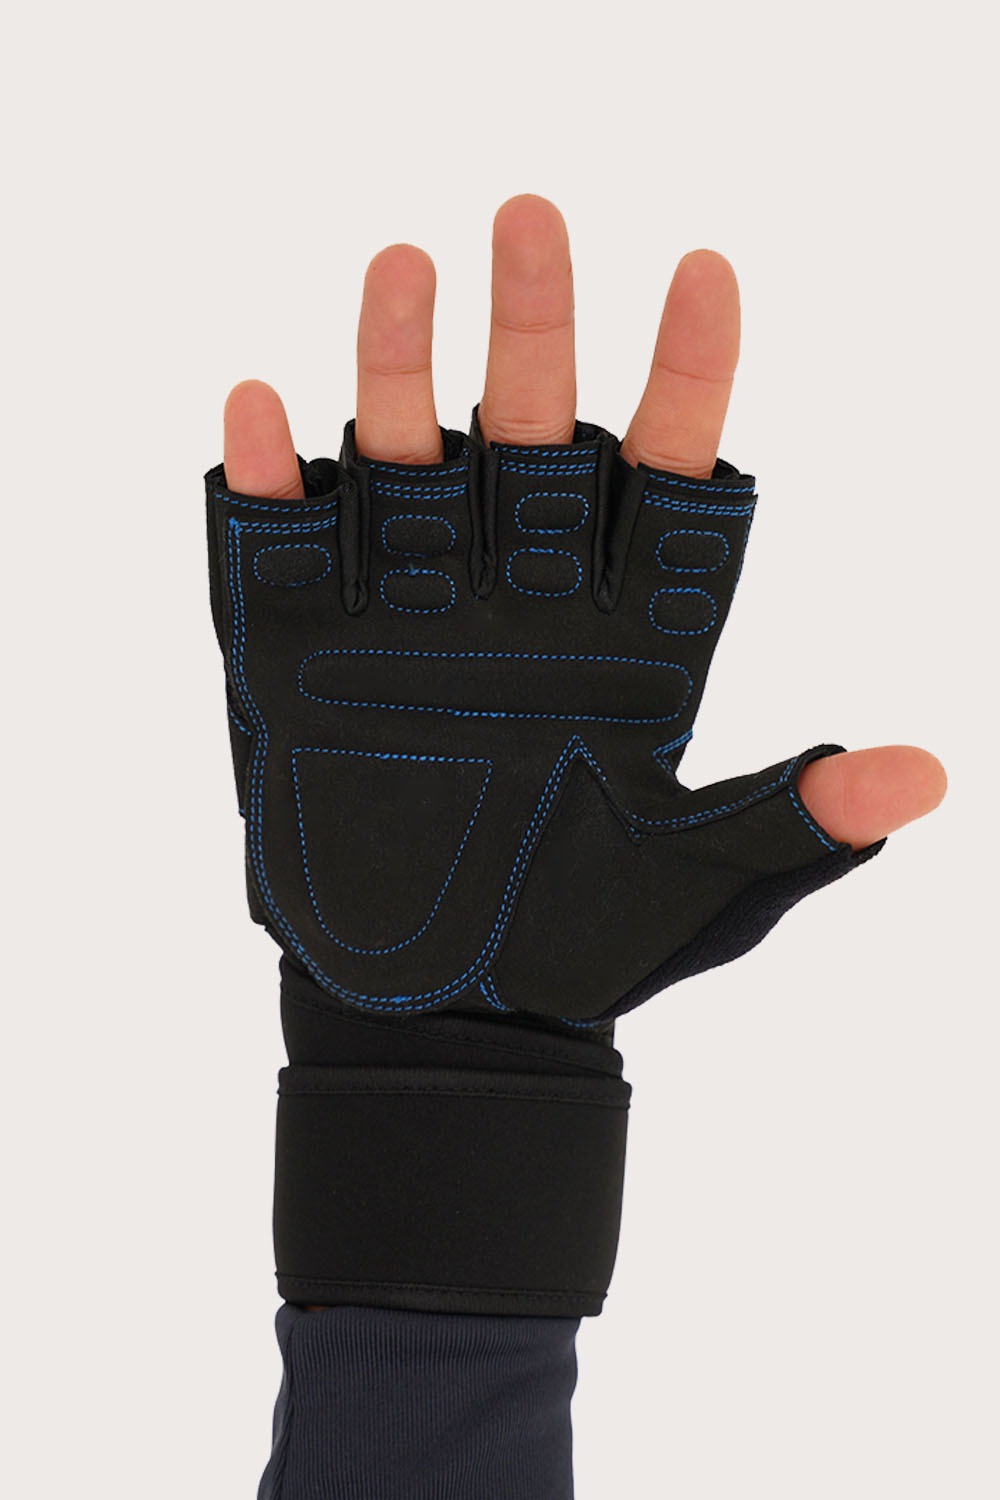 Zalmi Markhor Gym Gloves